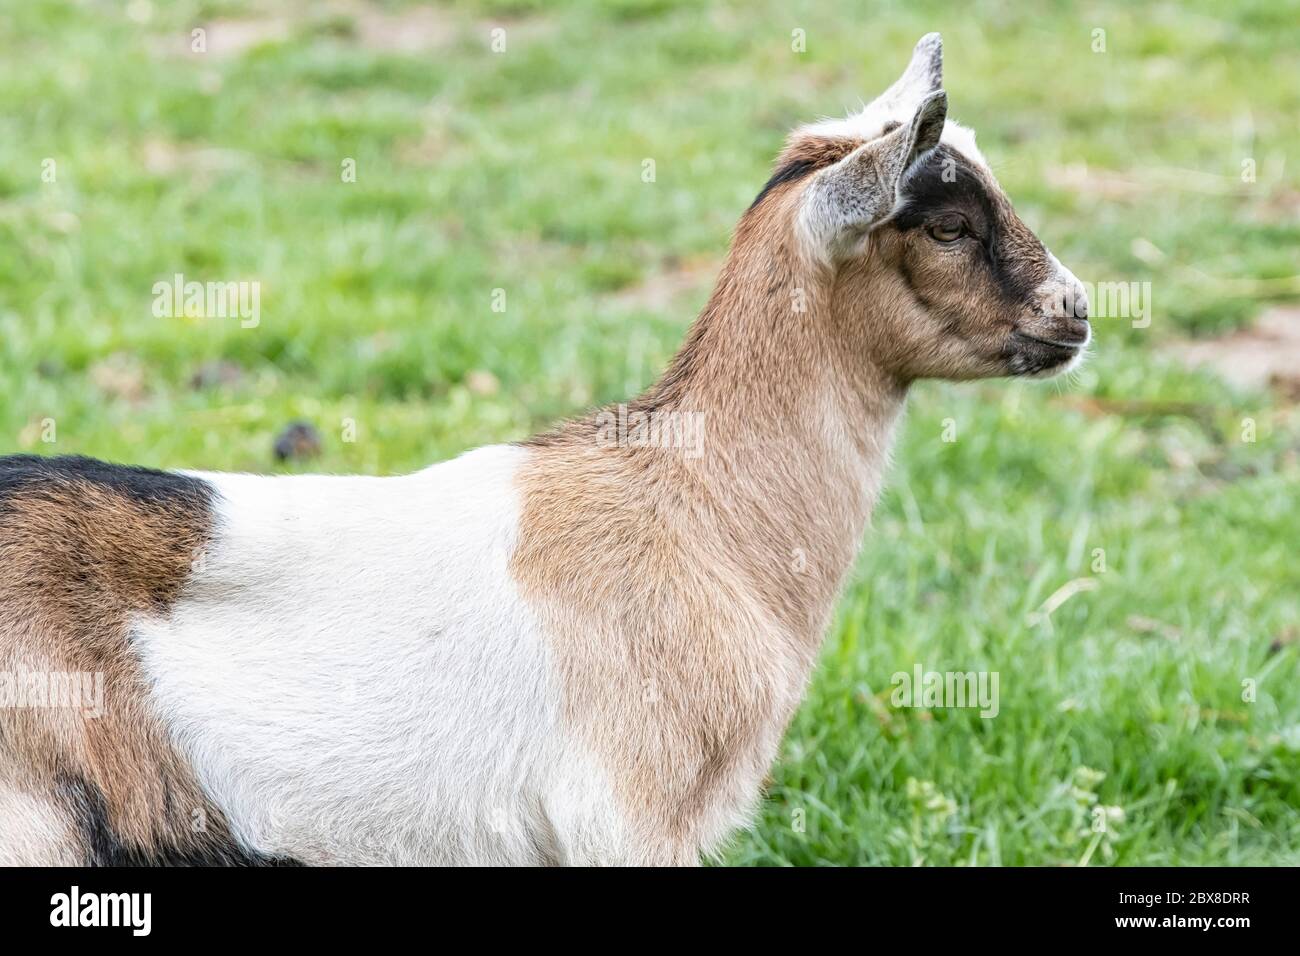 Ein braunes, weißes, schwarzes gehörntes Ziegenbaby, das auf dem Frühlingsgras steht, Kopfschuss. Stockfoto